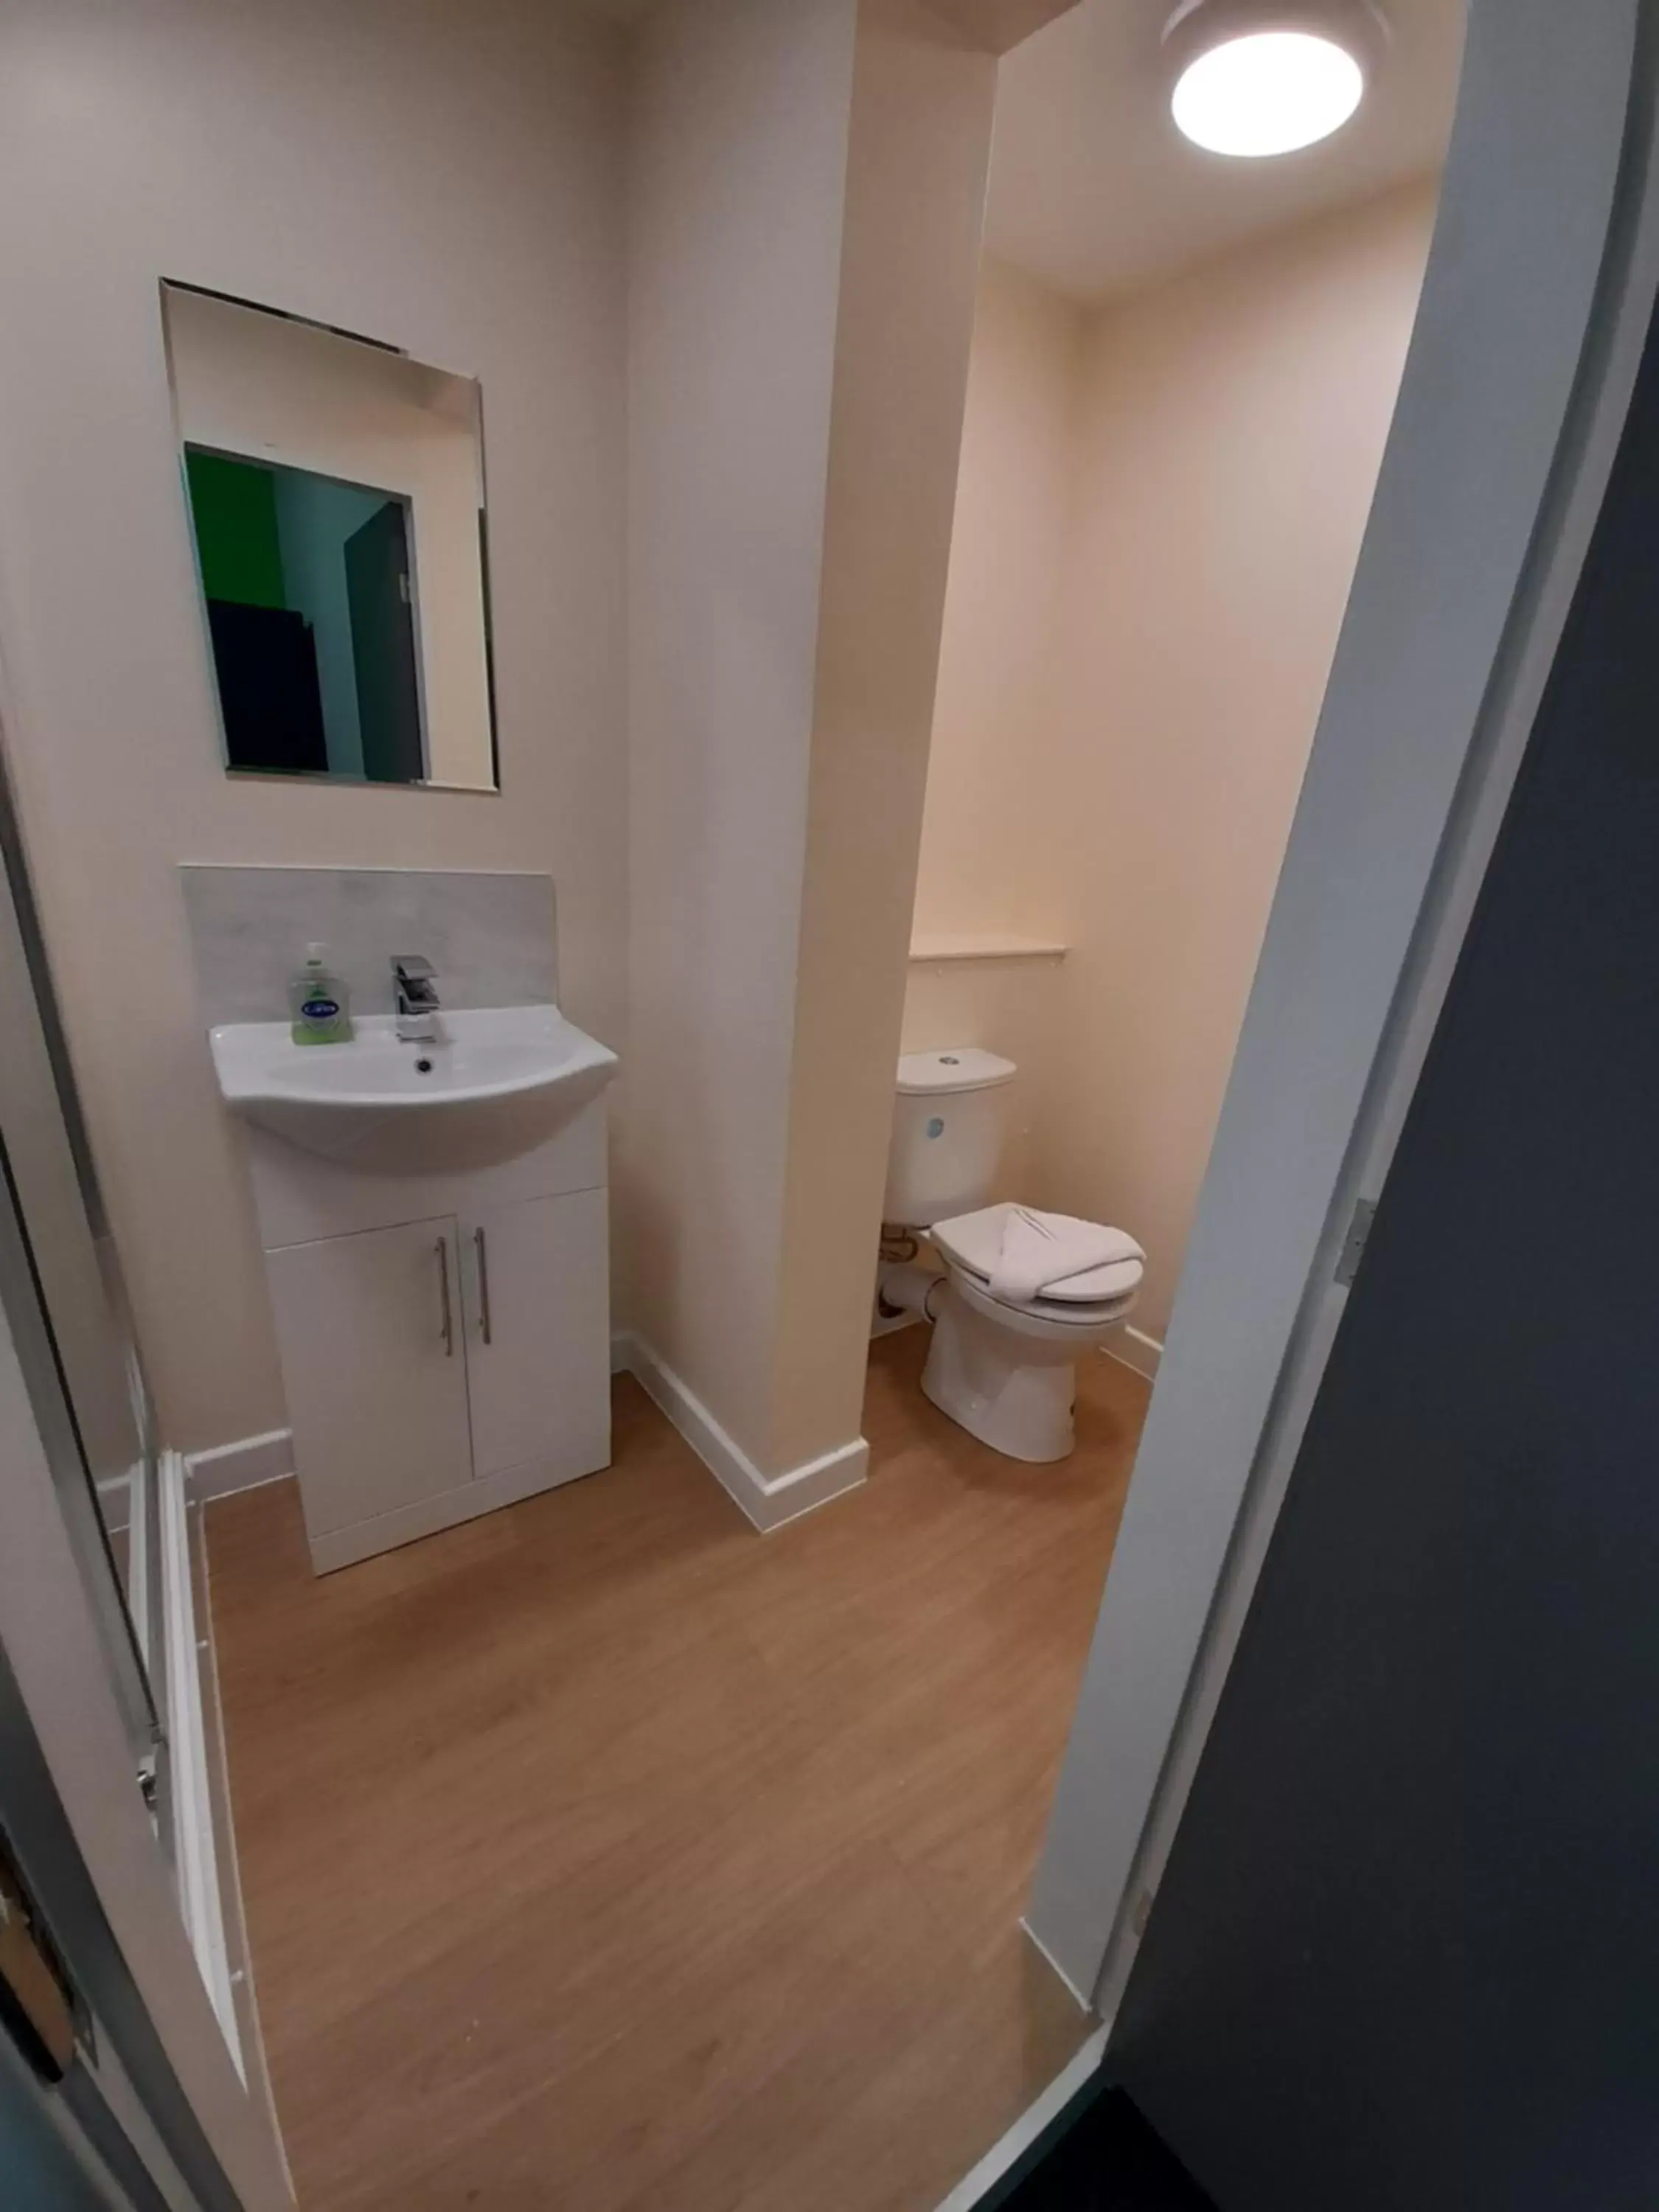 Toilet, Bathroom in Lymedale Suites Studios & Aparthotel in NEWCASTLE UNDER LYME & STOKE